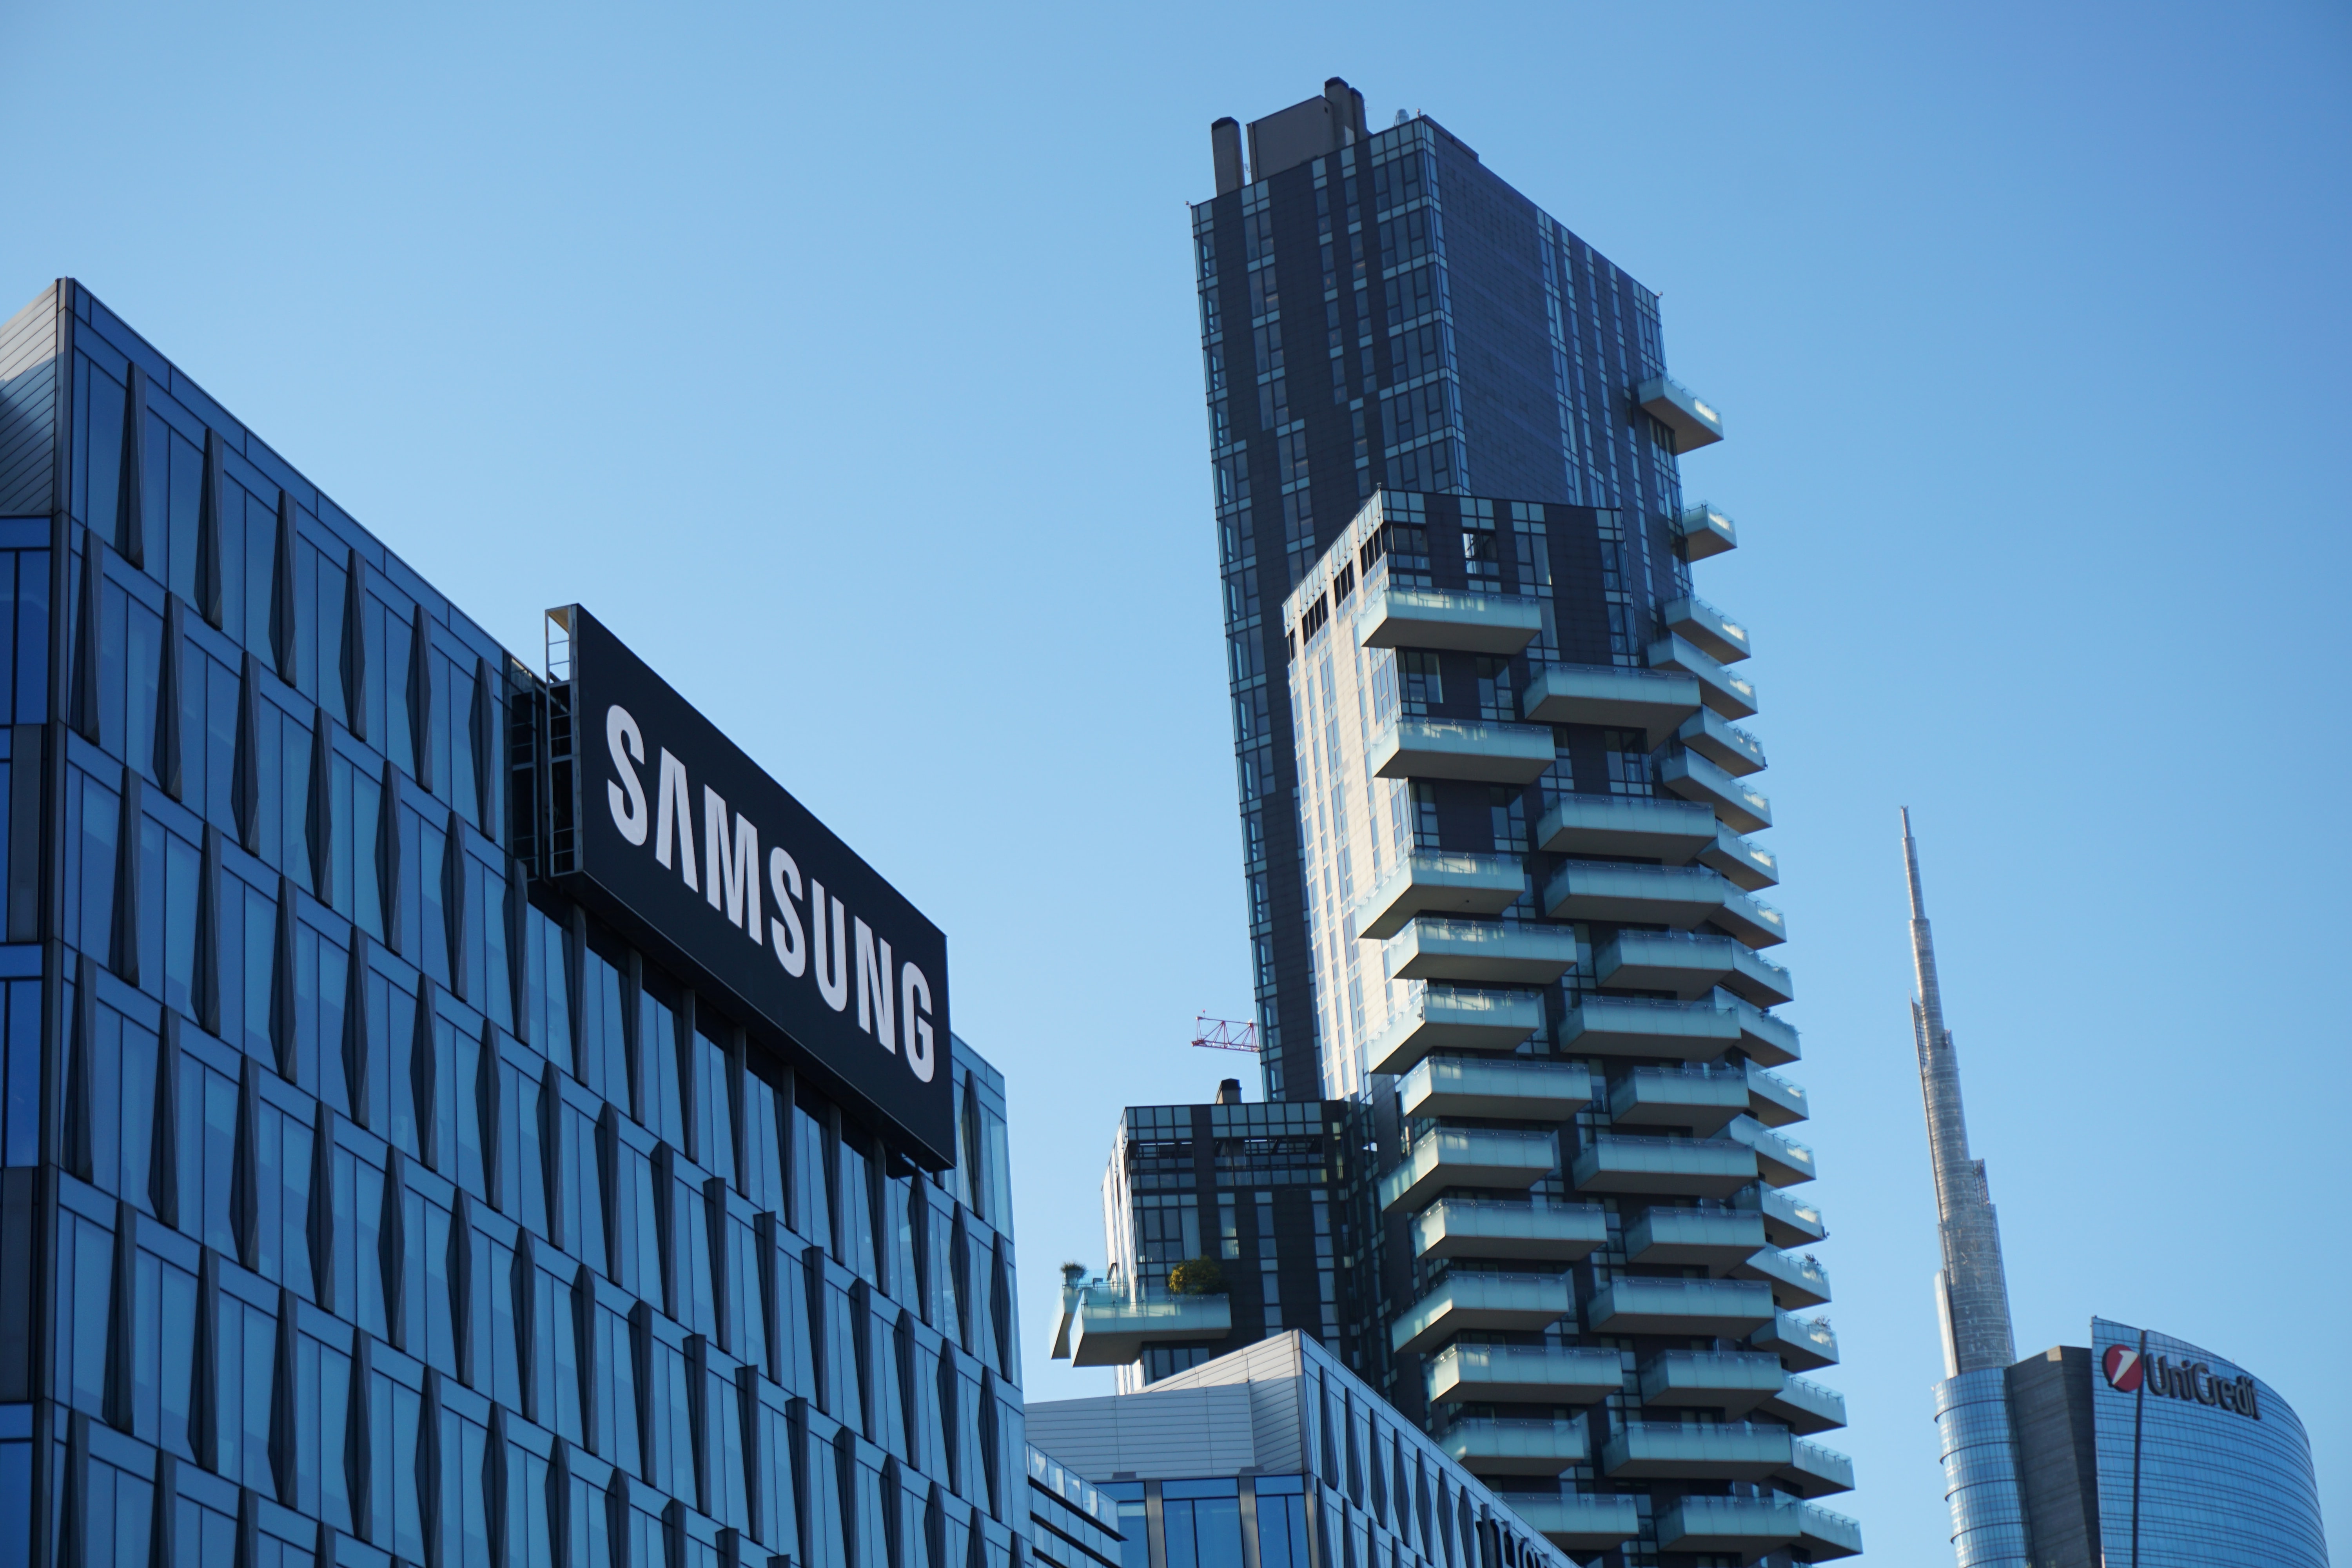 Historie značky Samsung - od potravin k high-tech produktům